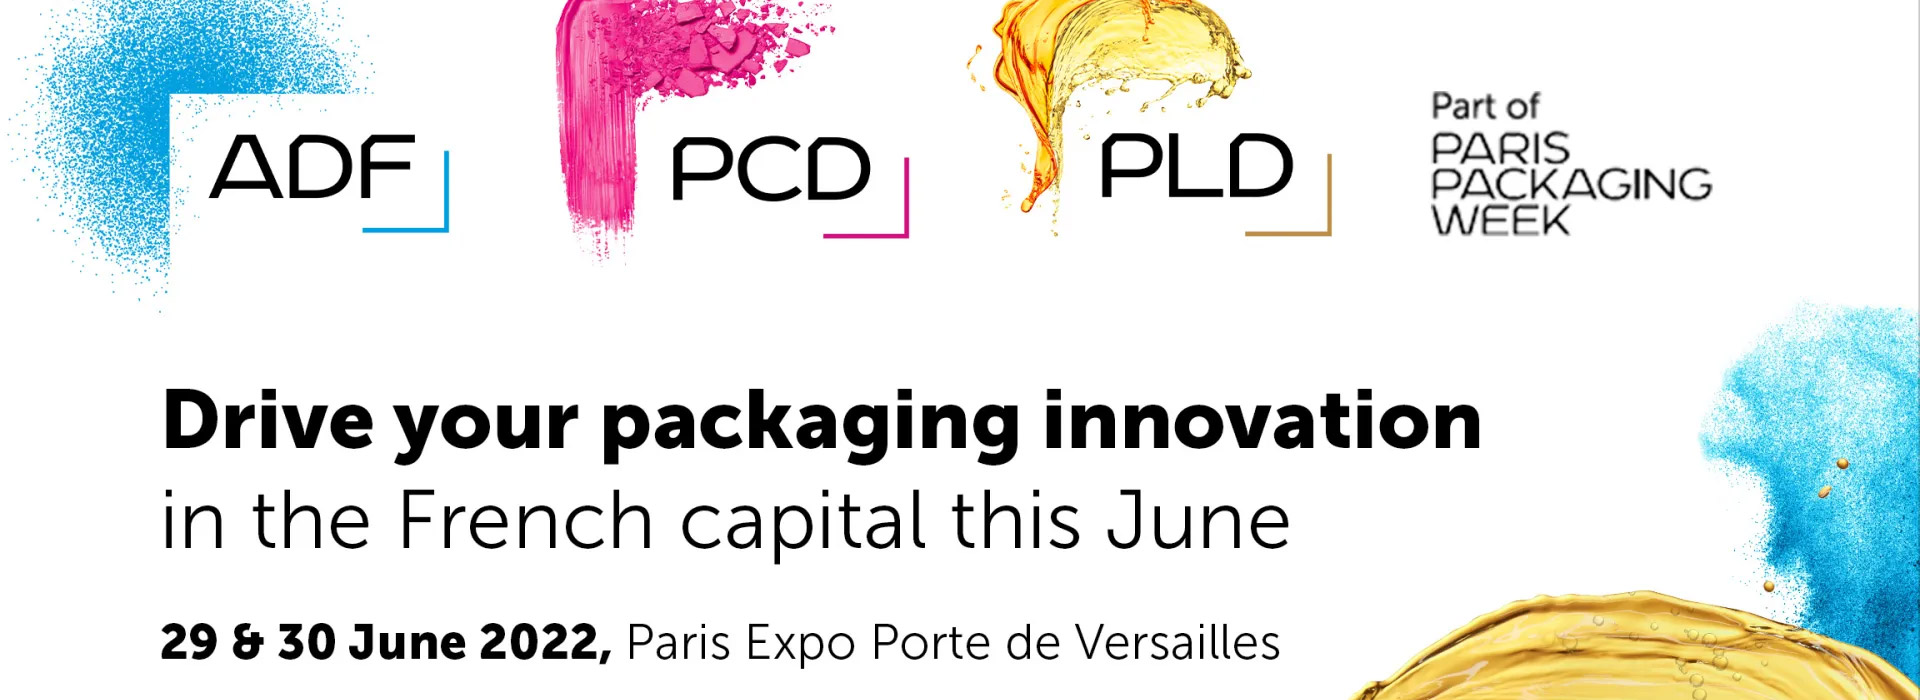 Paris Packaging Week 2022